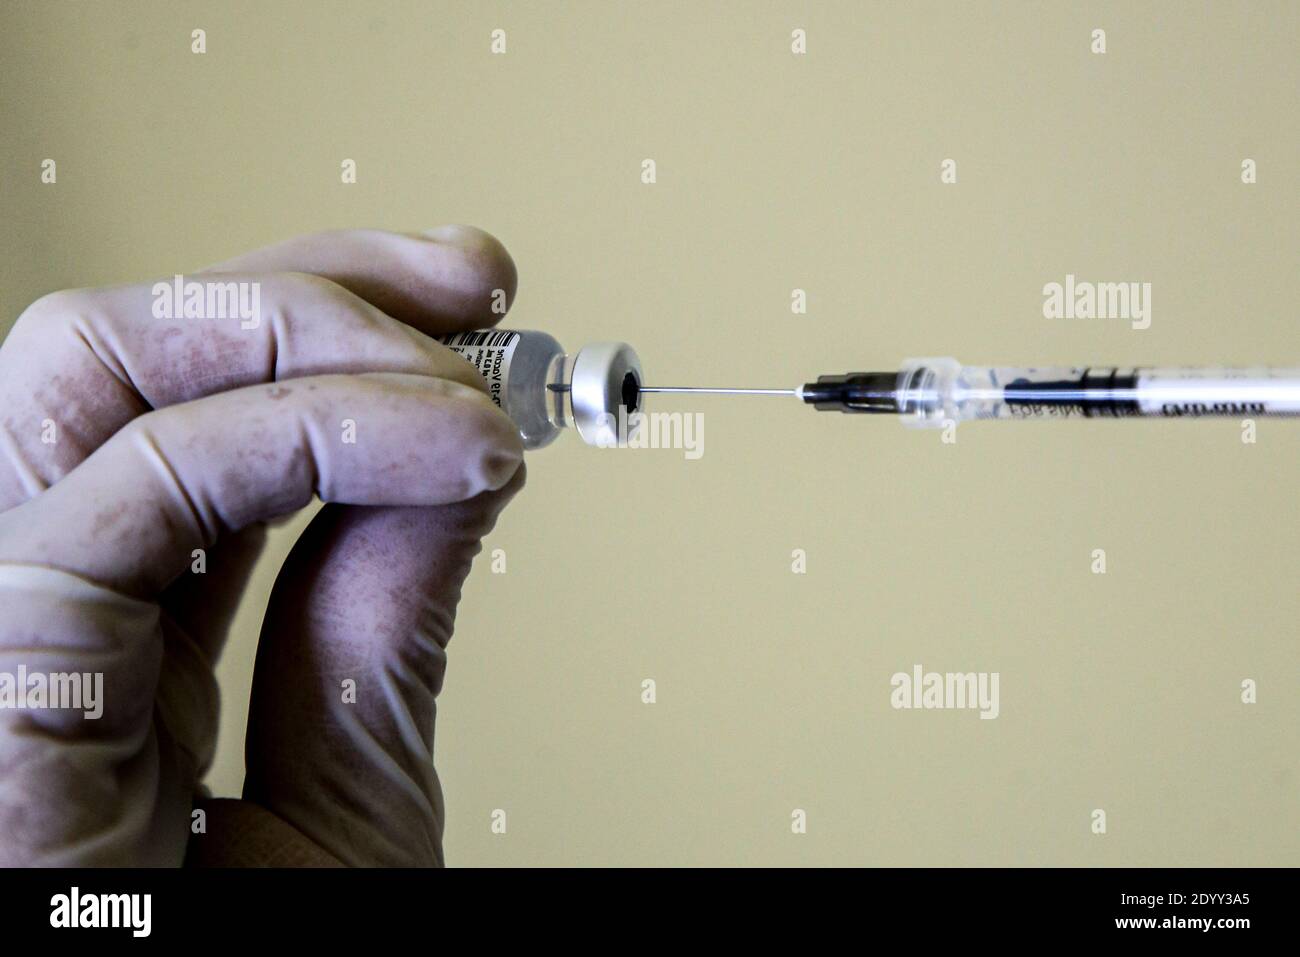 el trabajador de salud inhala con una jeringa la vacuna para ser administrada a un colega. Día de la vacuna en Italia, las primeras inyecciones de la vacuna Pfizer se administran a los trabajadores de la salud al mismo tiempo. Foto de stock